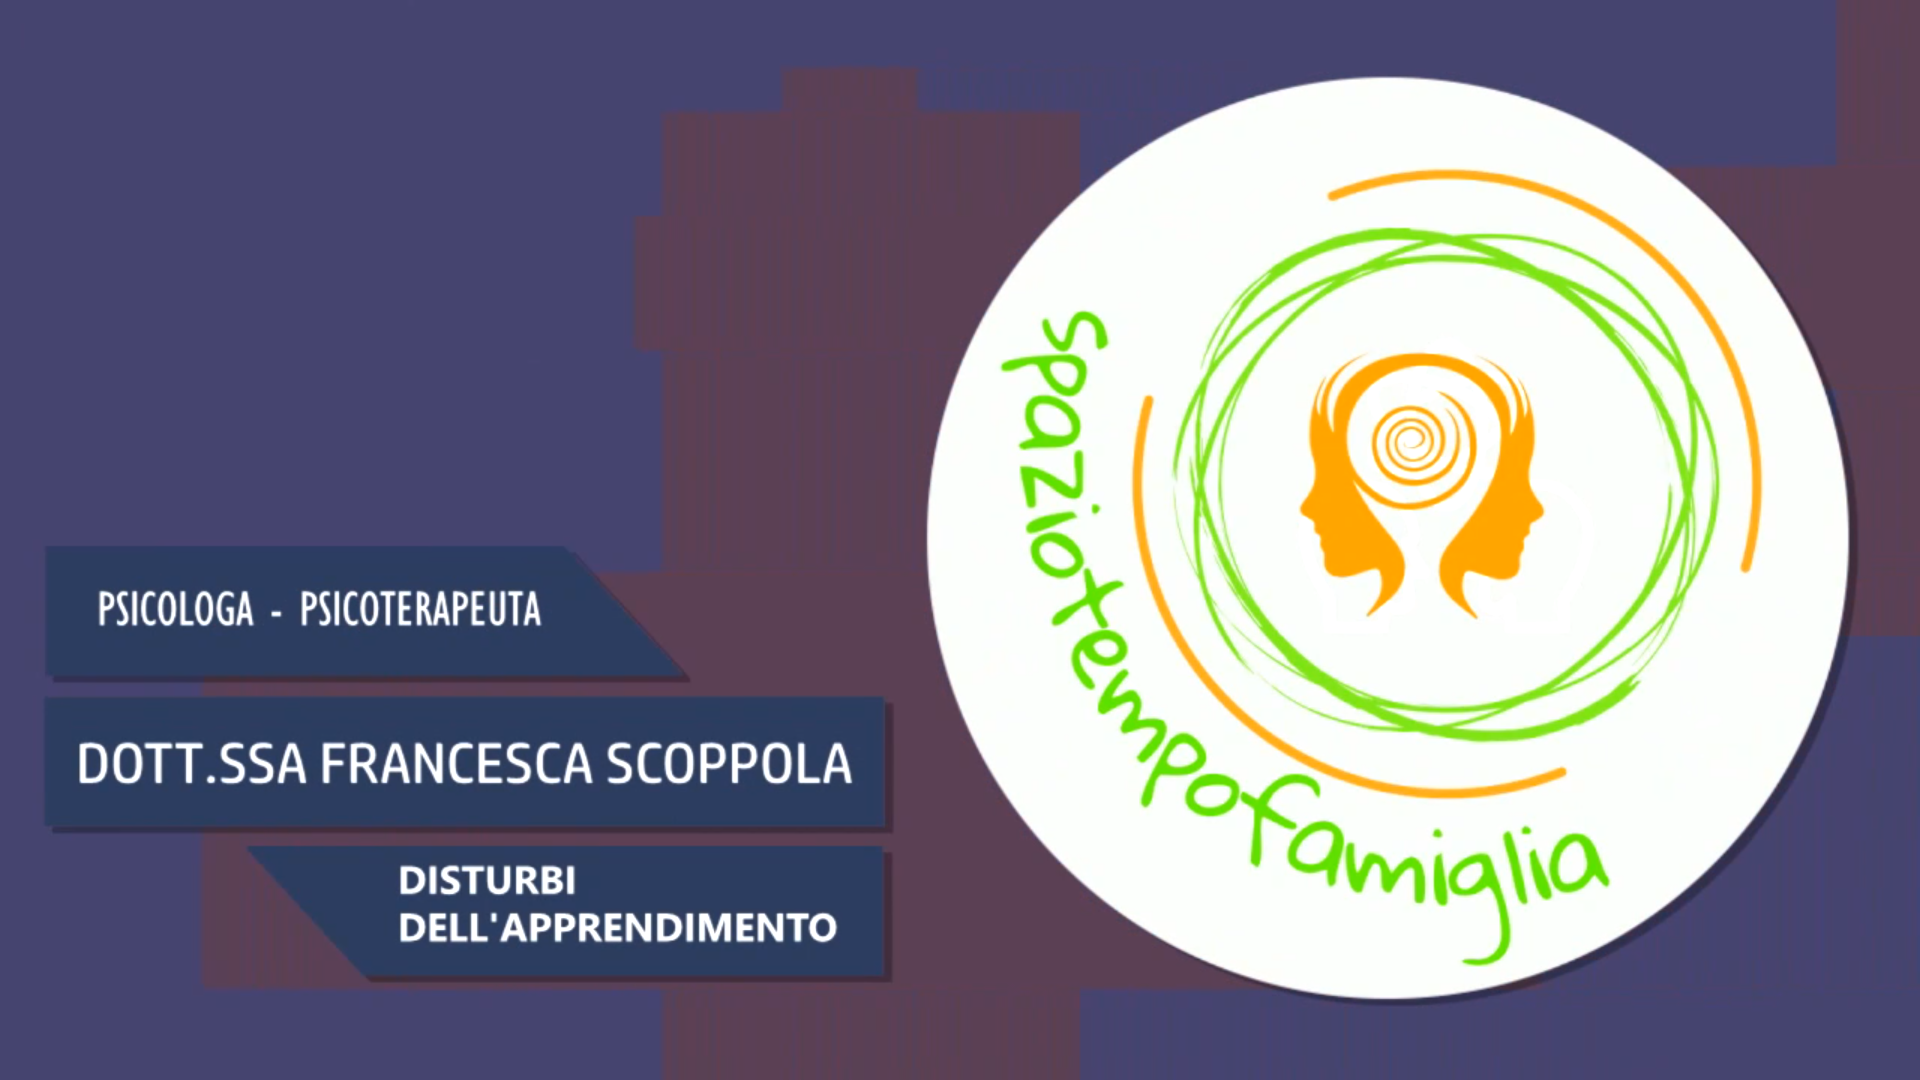 Intervista alla Dott.ssa Francesca Scoppola – Disturbi dell’apprendimento